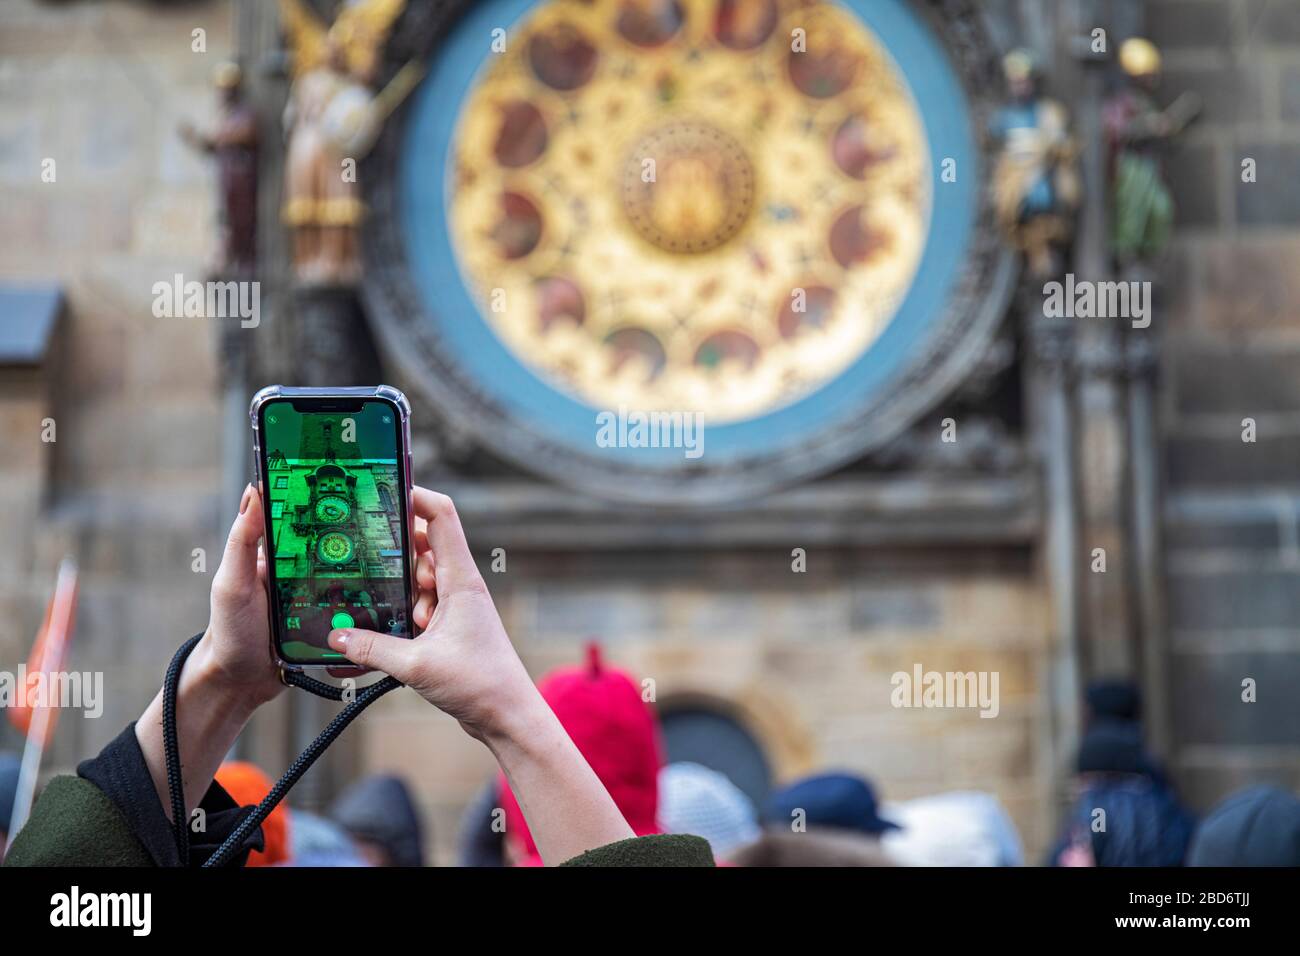 Foto der astronomischen Uhr mit smartphone, Altstädter Rathaus, Prag, Tscechische Republik Foto Stock